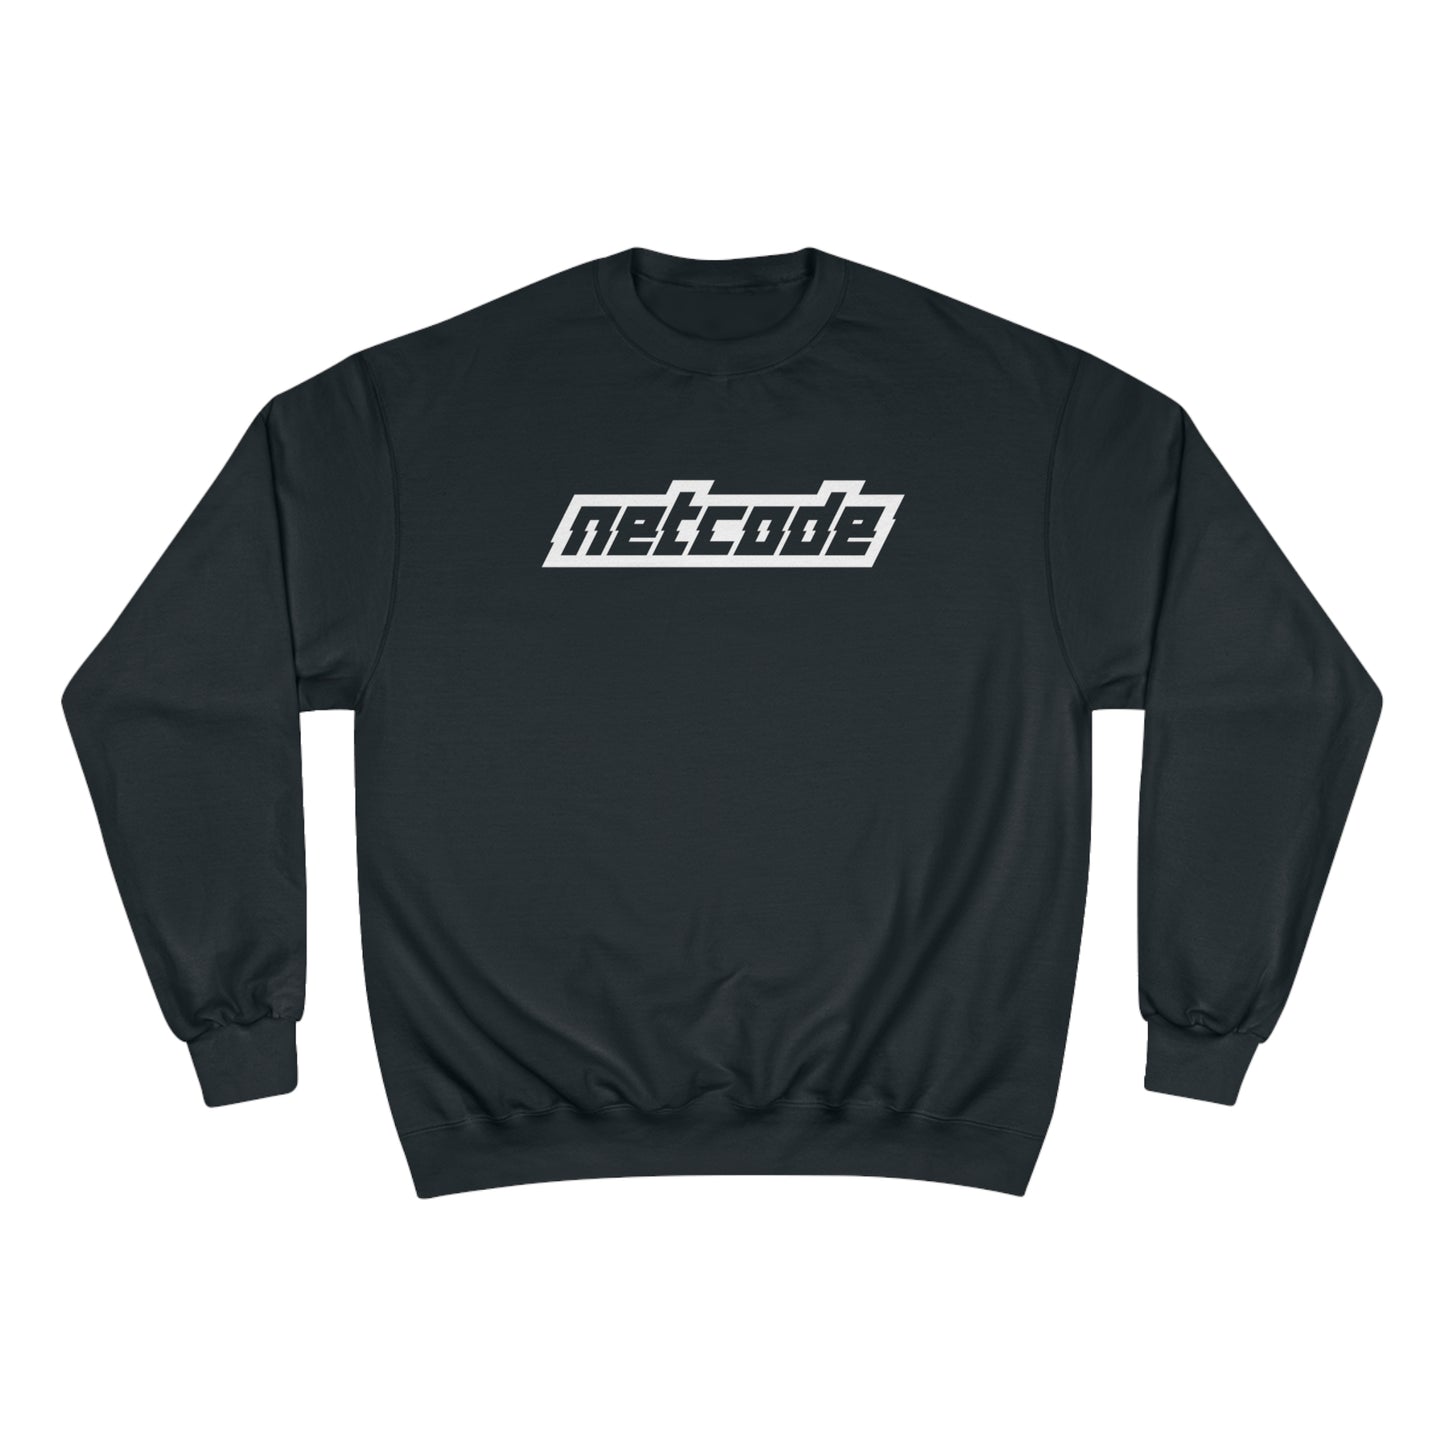 NETCODE Crewneck Sweatshirt